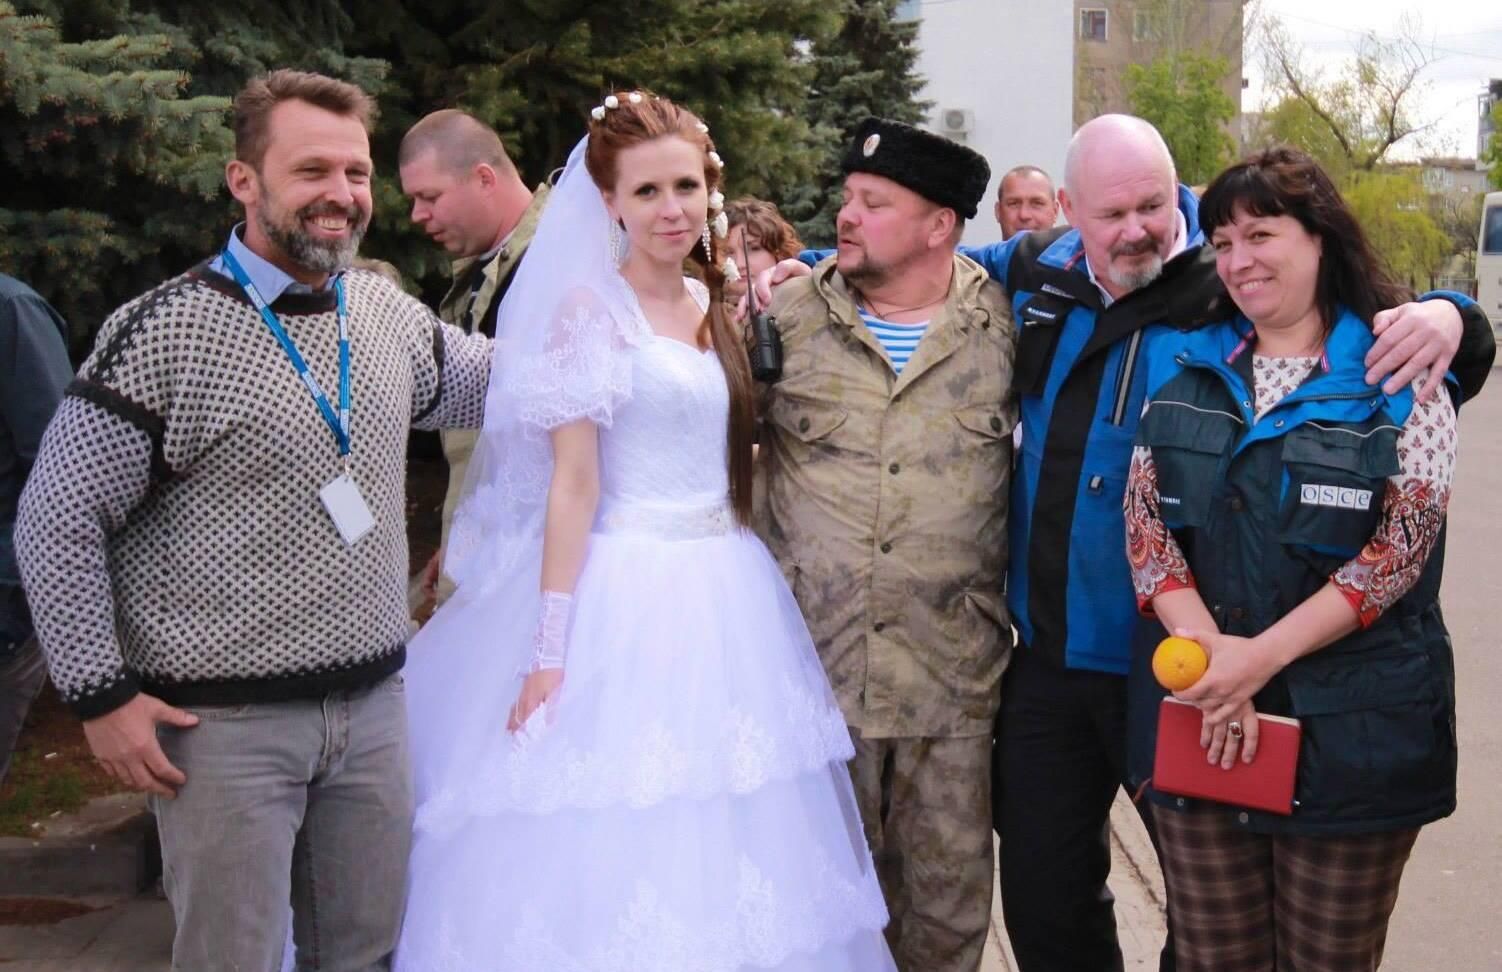 Робітниця ОБСЄ Зимич, яка була на весіллі бойовиків, працює у місії ЄС